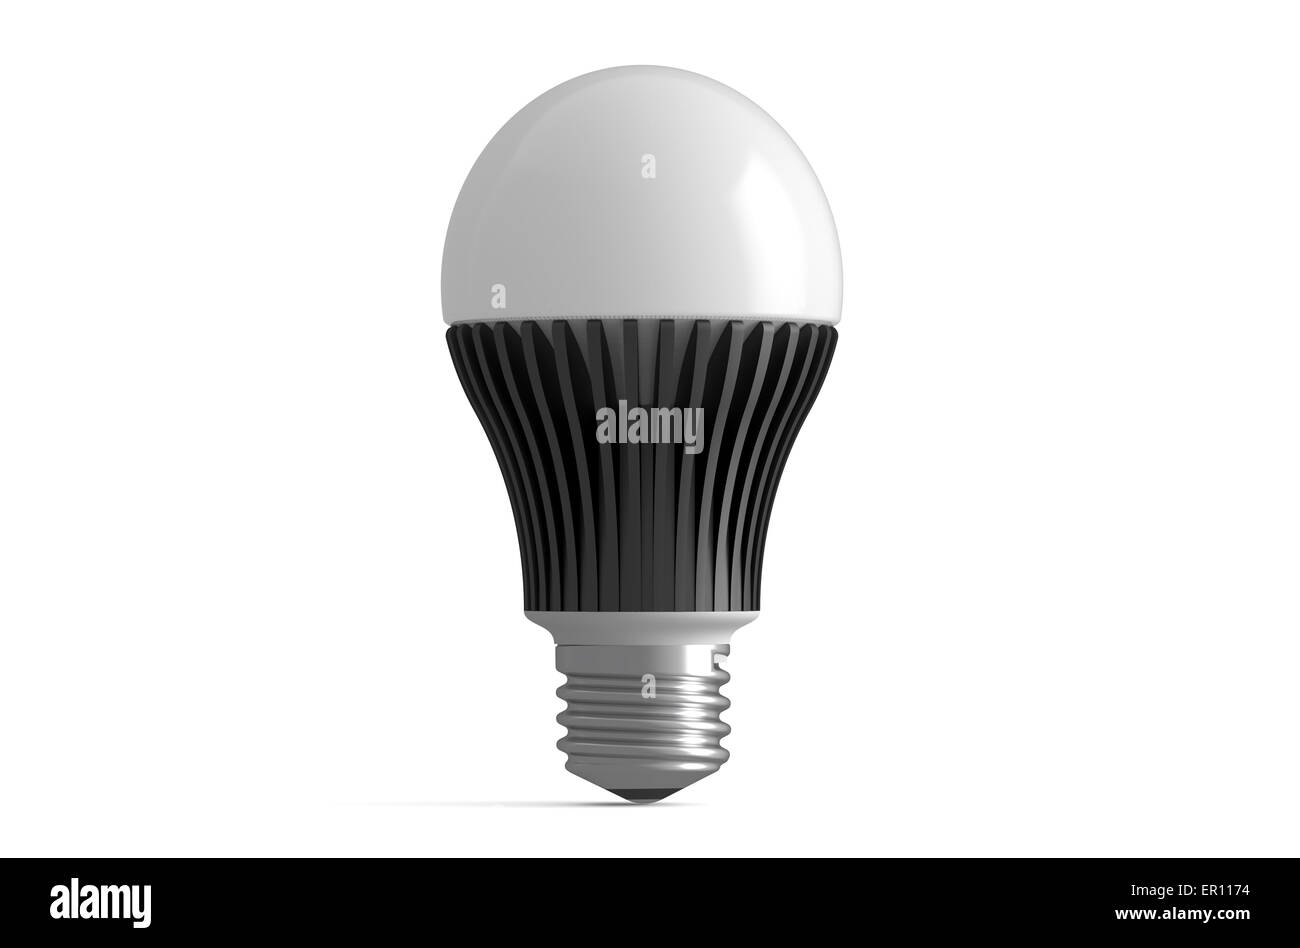 one LED lamp isolated on white background Stock Photo